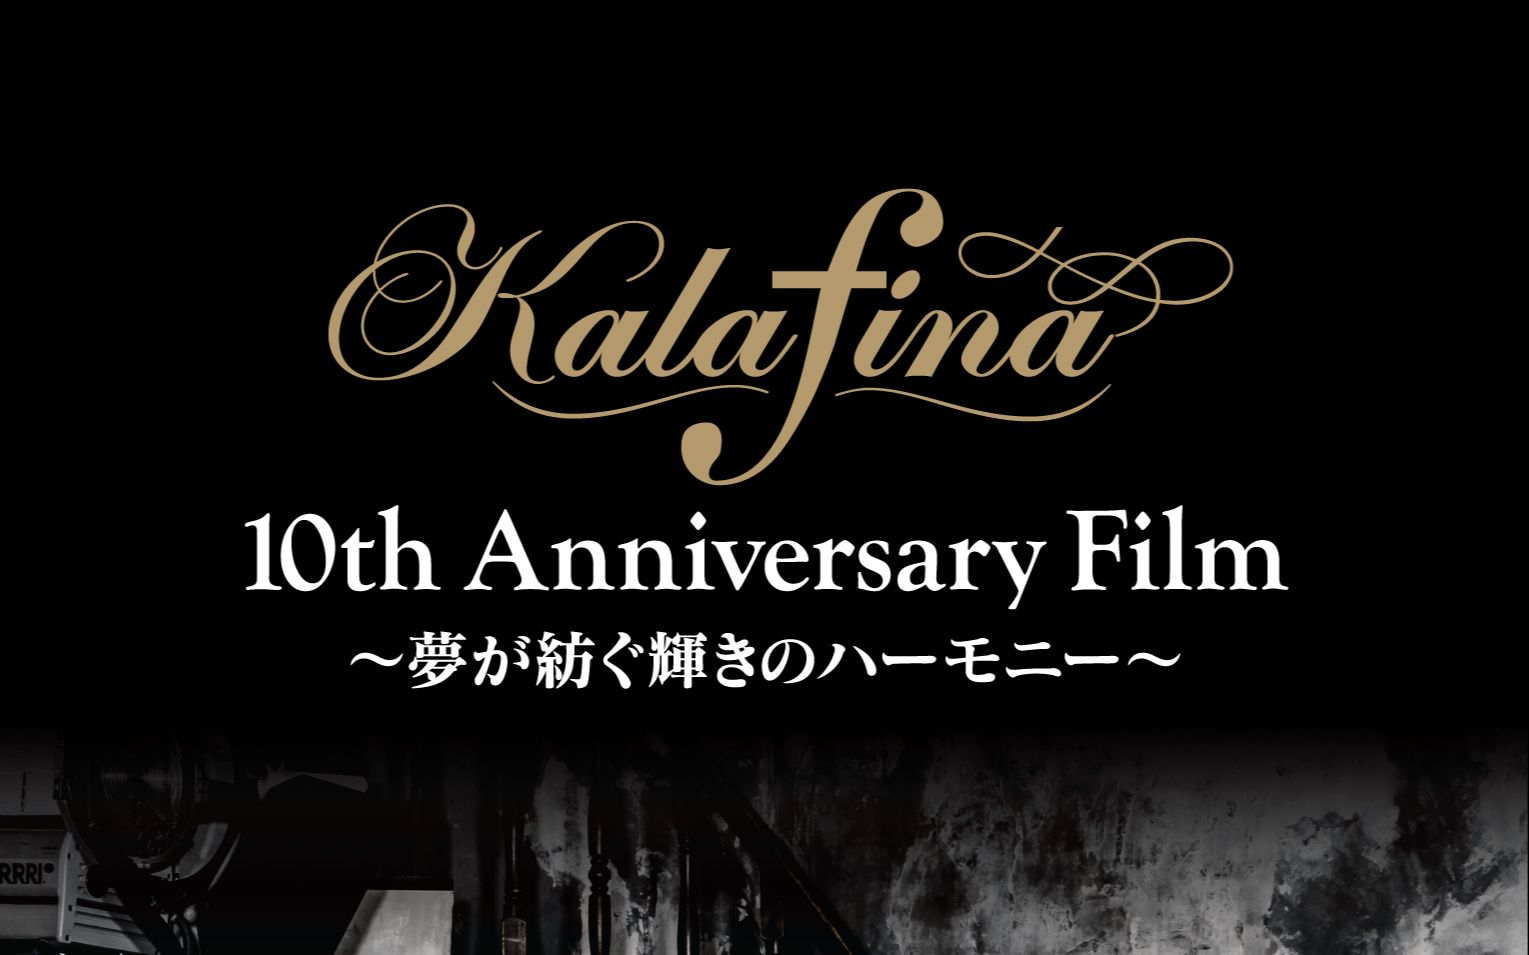 更新完毕film Live Kalafina 10th Anniversary Live18 Film 夢が紡ぐ輝きのハーモニー 哔哩哔哩 つロ干杯 Bilibili